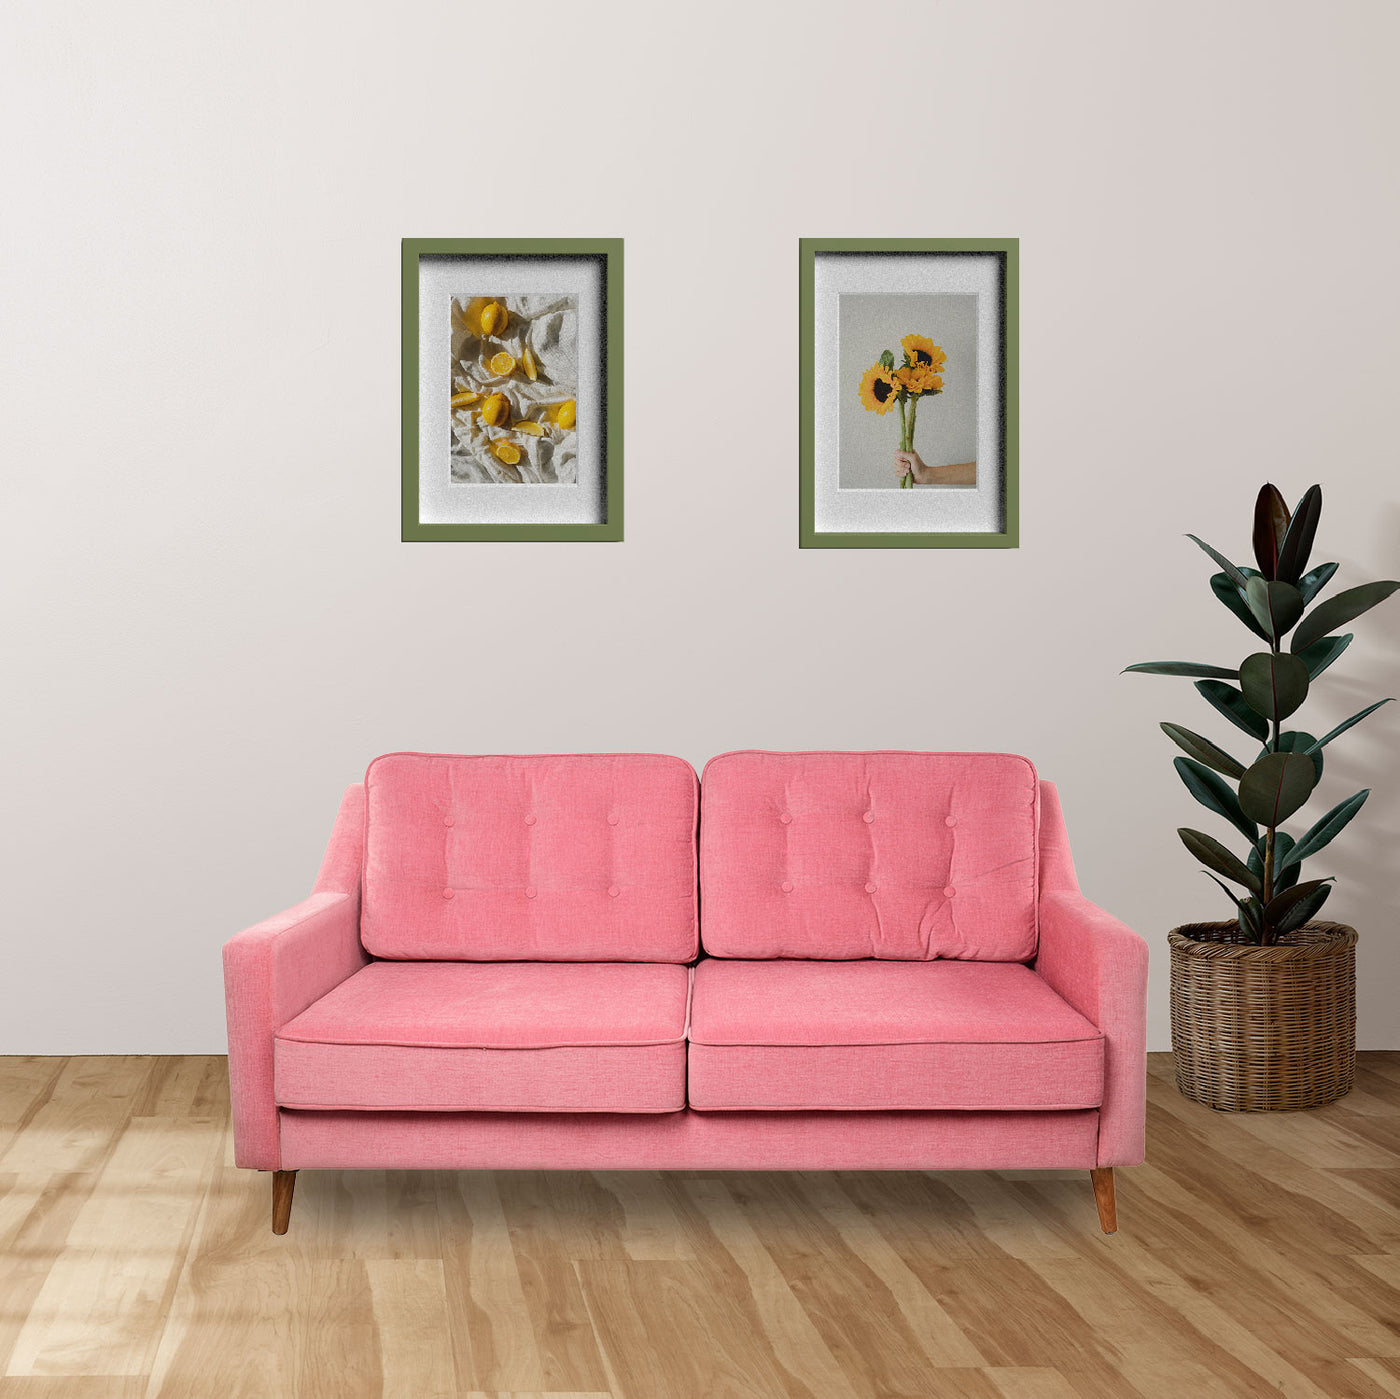 Rosa 3 Seater Sofa